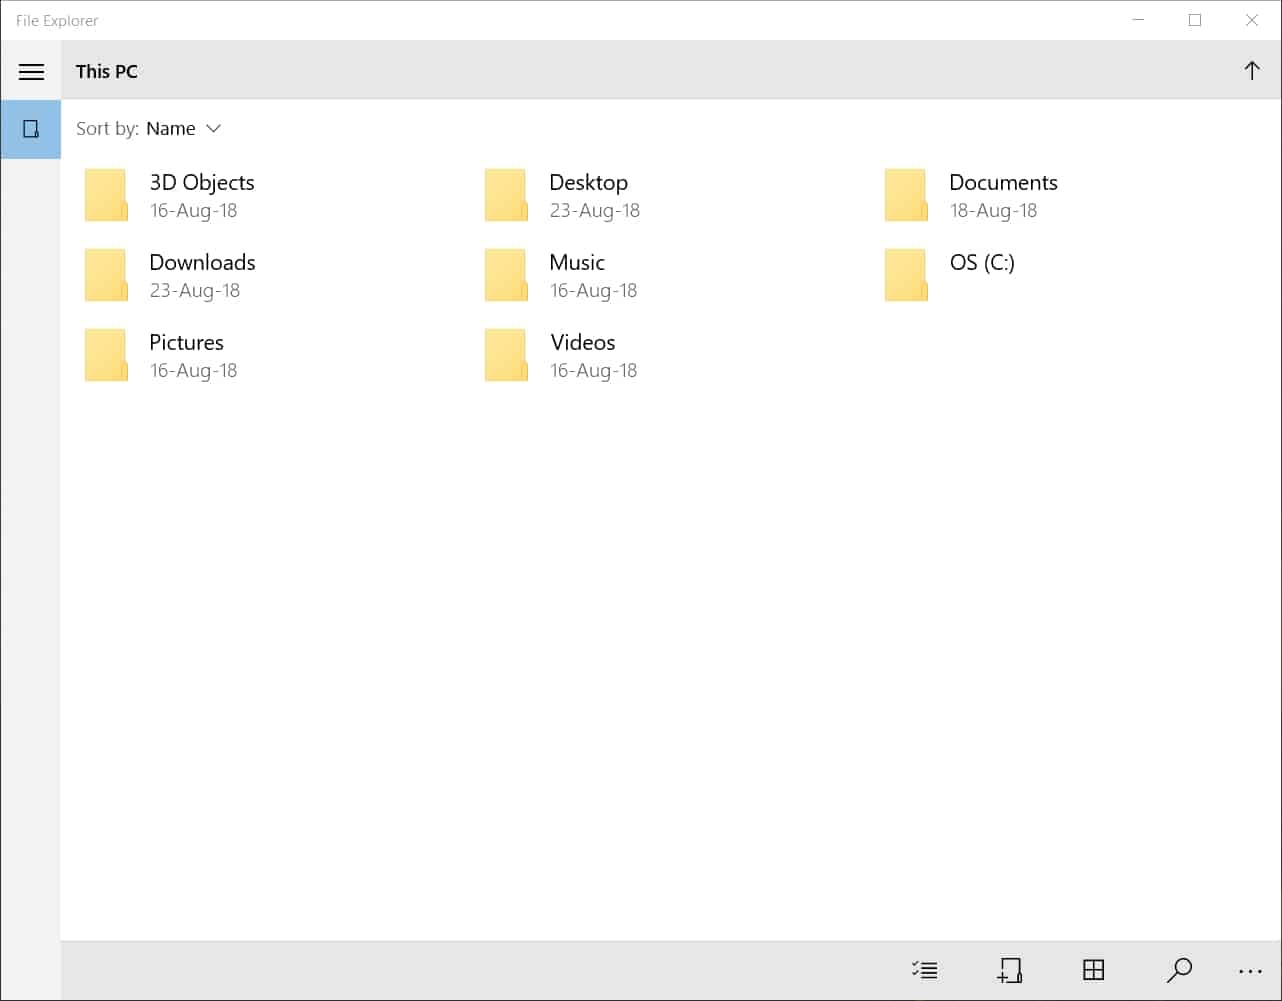 UWP File Explorer for Windows 10